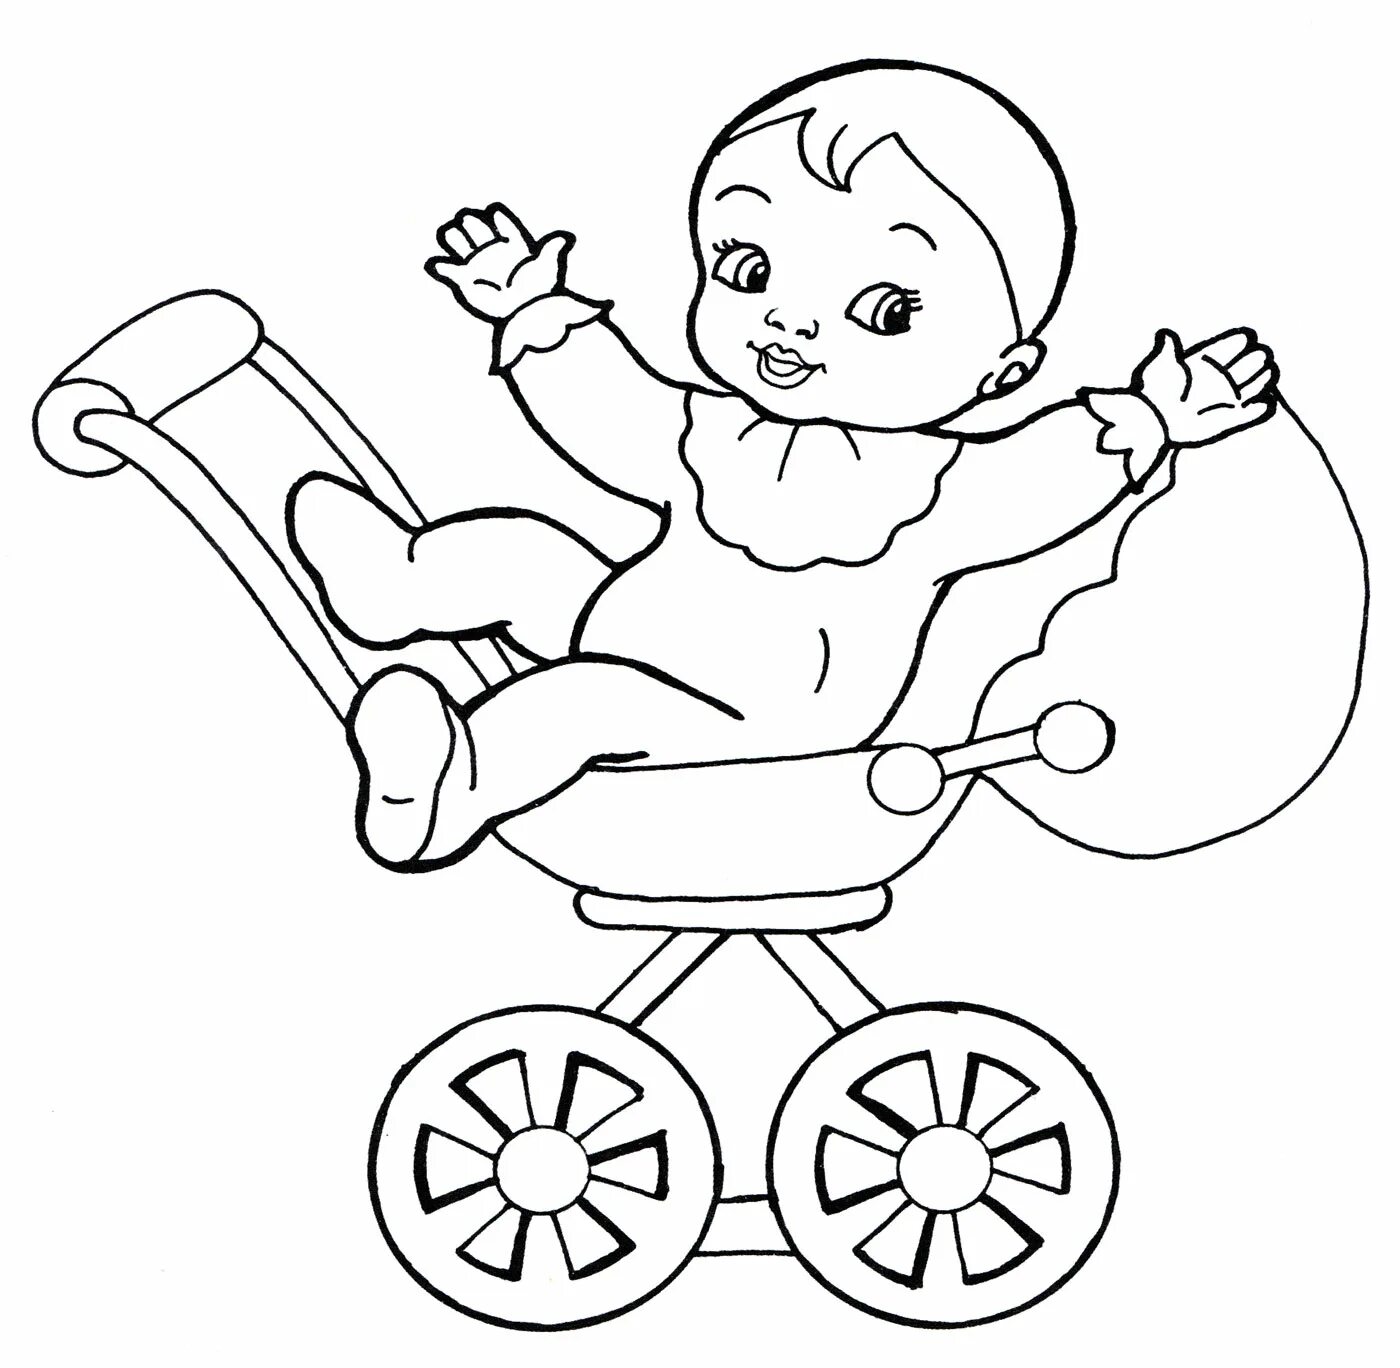 Baby in stroller #7